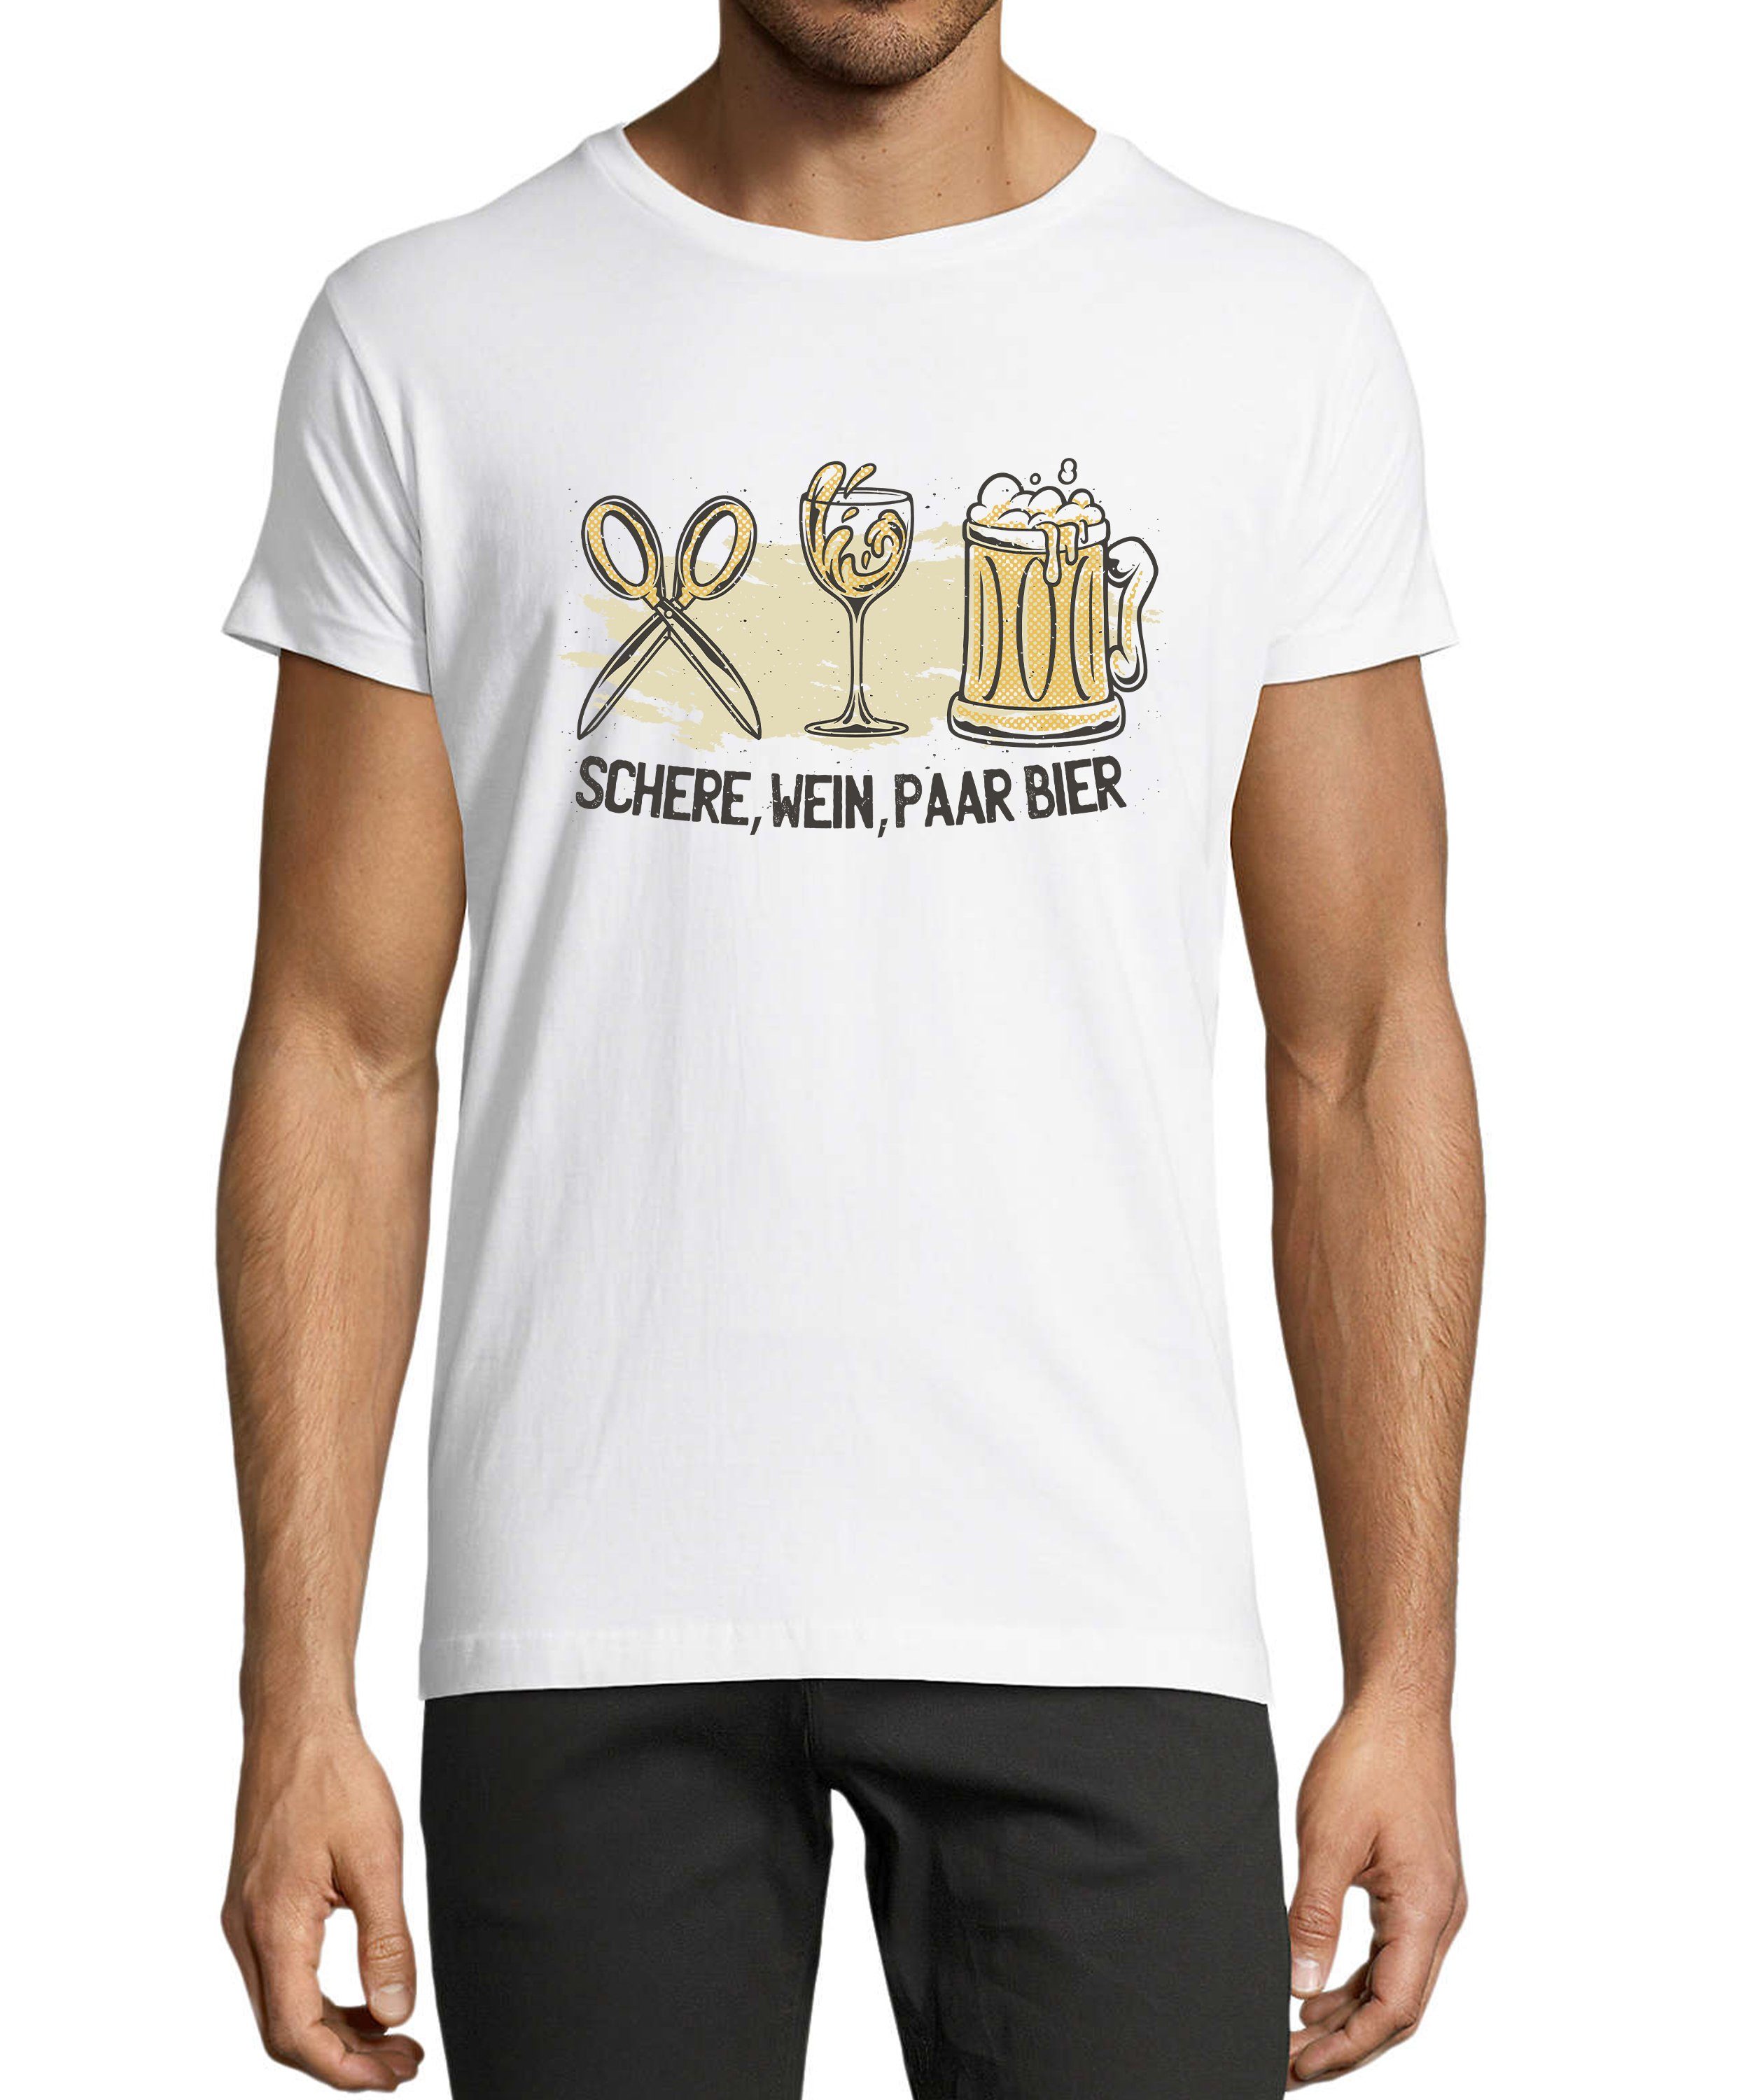 MyDesign24 T-Shirt Herren Sprüche Shirt - Trinkshirt Schere, Wein, Paar Bier Baumwollshirt mit Aufdruck Regular Fit, i321 weiss